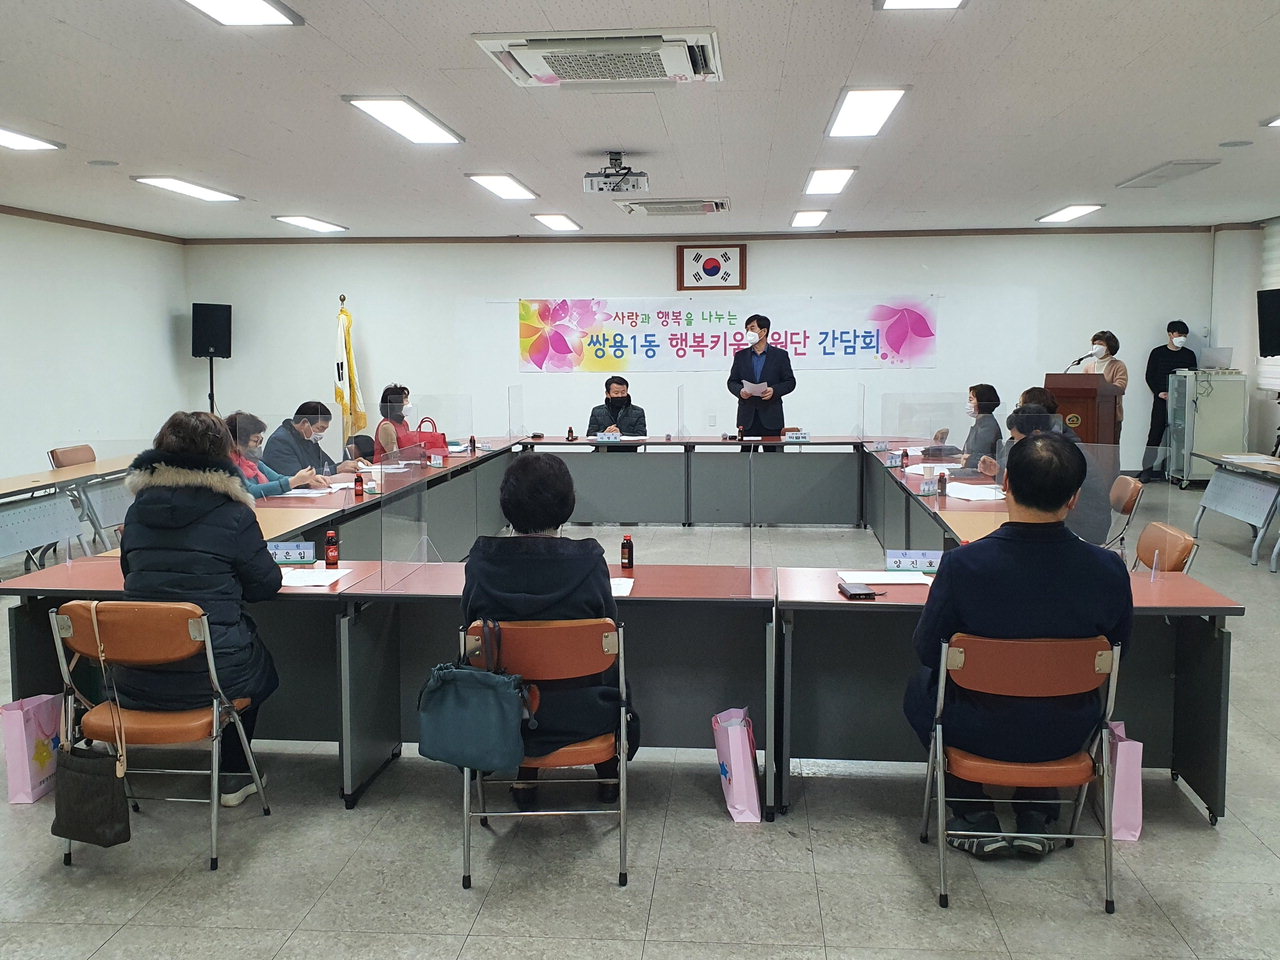 천안시 쌍용1동행복키움지원단이 20일 쌍용1동행정복지센터 회의실에서 ‘2021 사업추진 회의’를 개최했다./천안시 제공